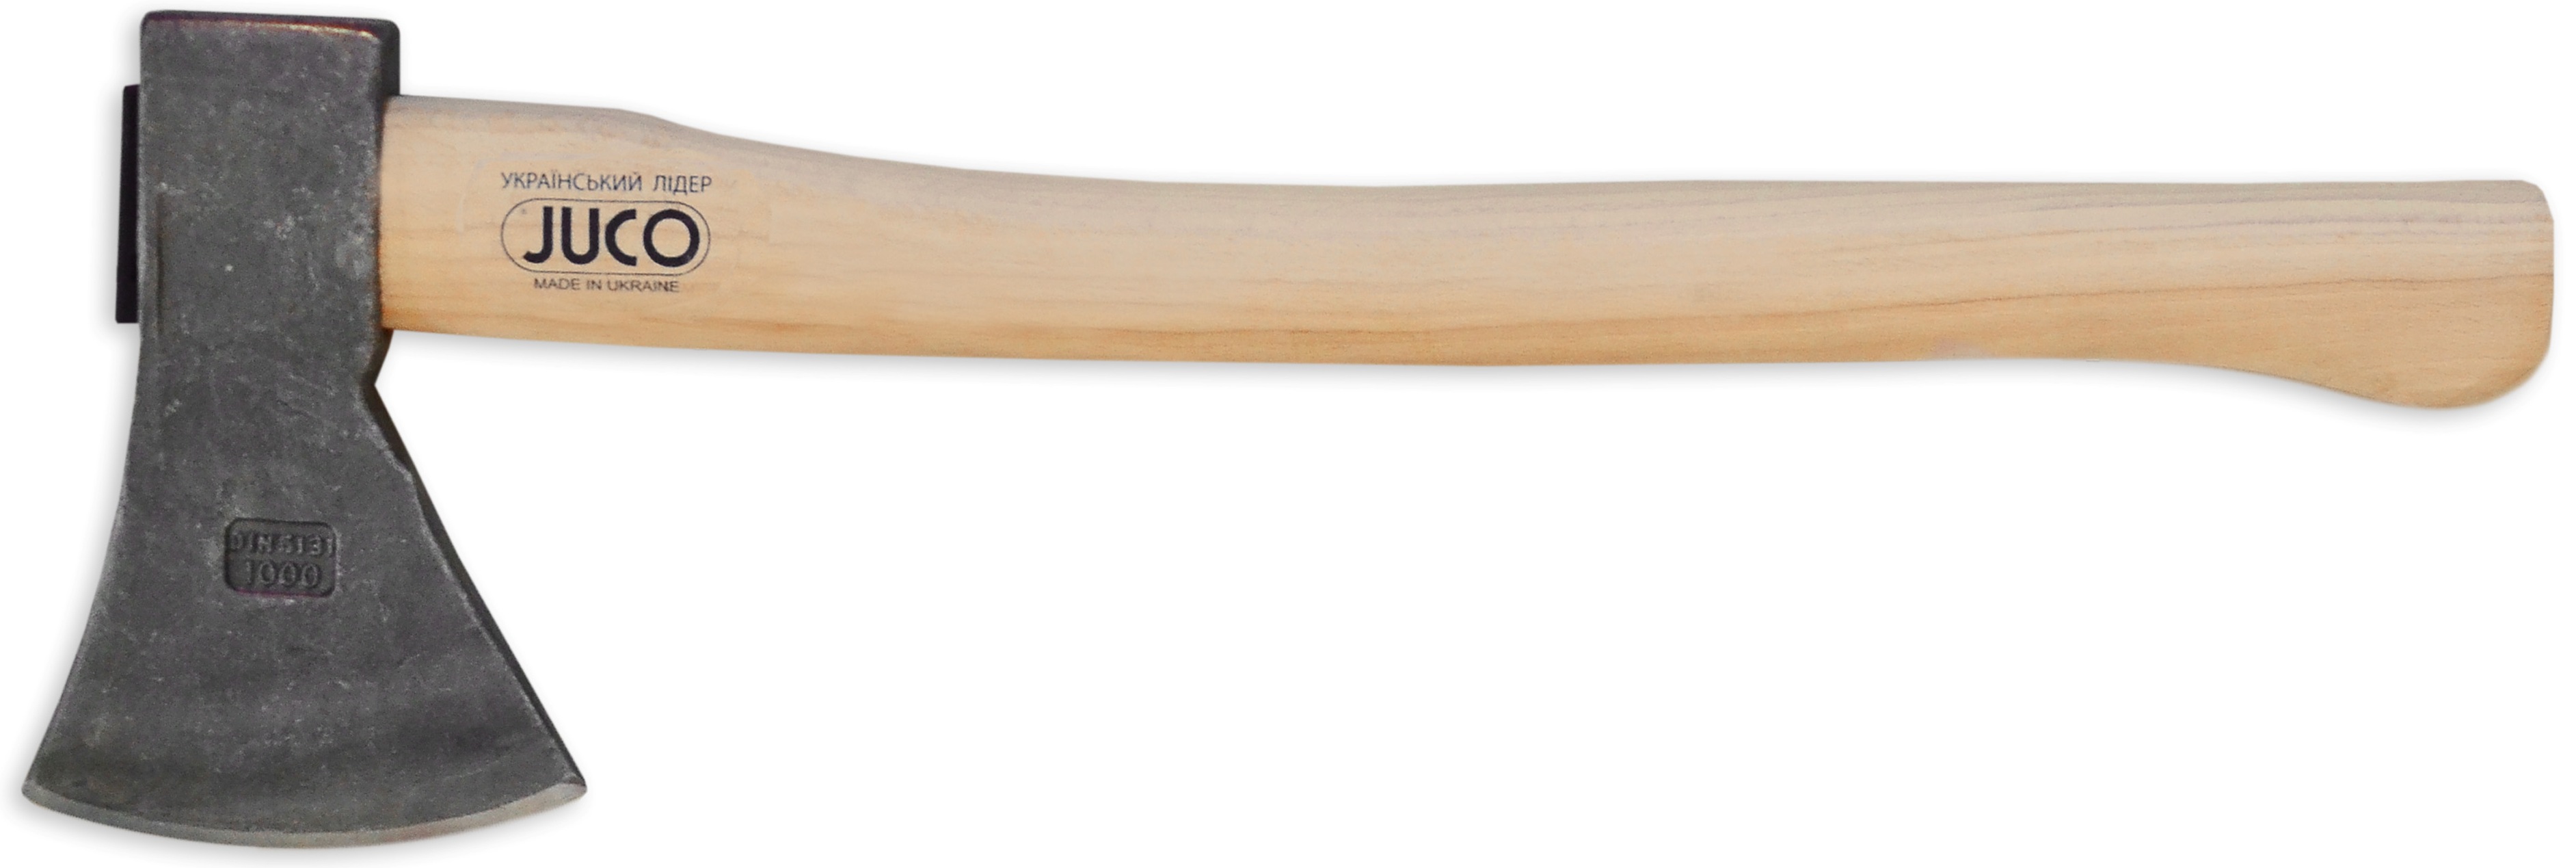 39-658 Сокира з дерев'яною ручкою, JUCO, 1500 г | Україна